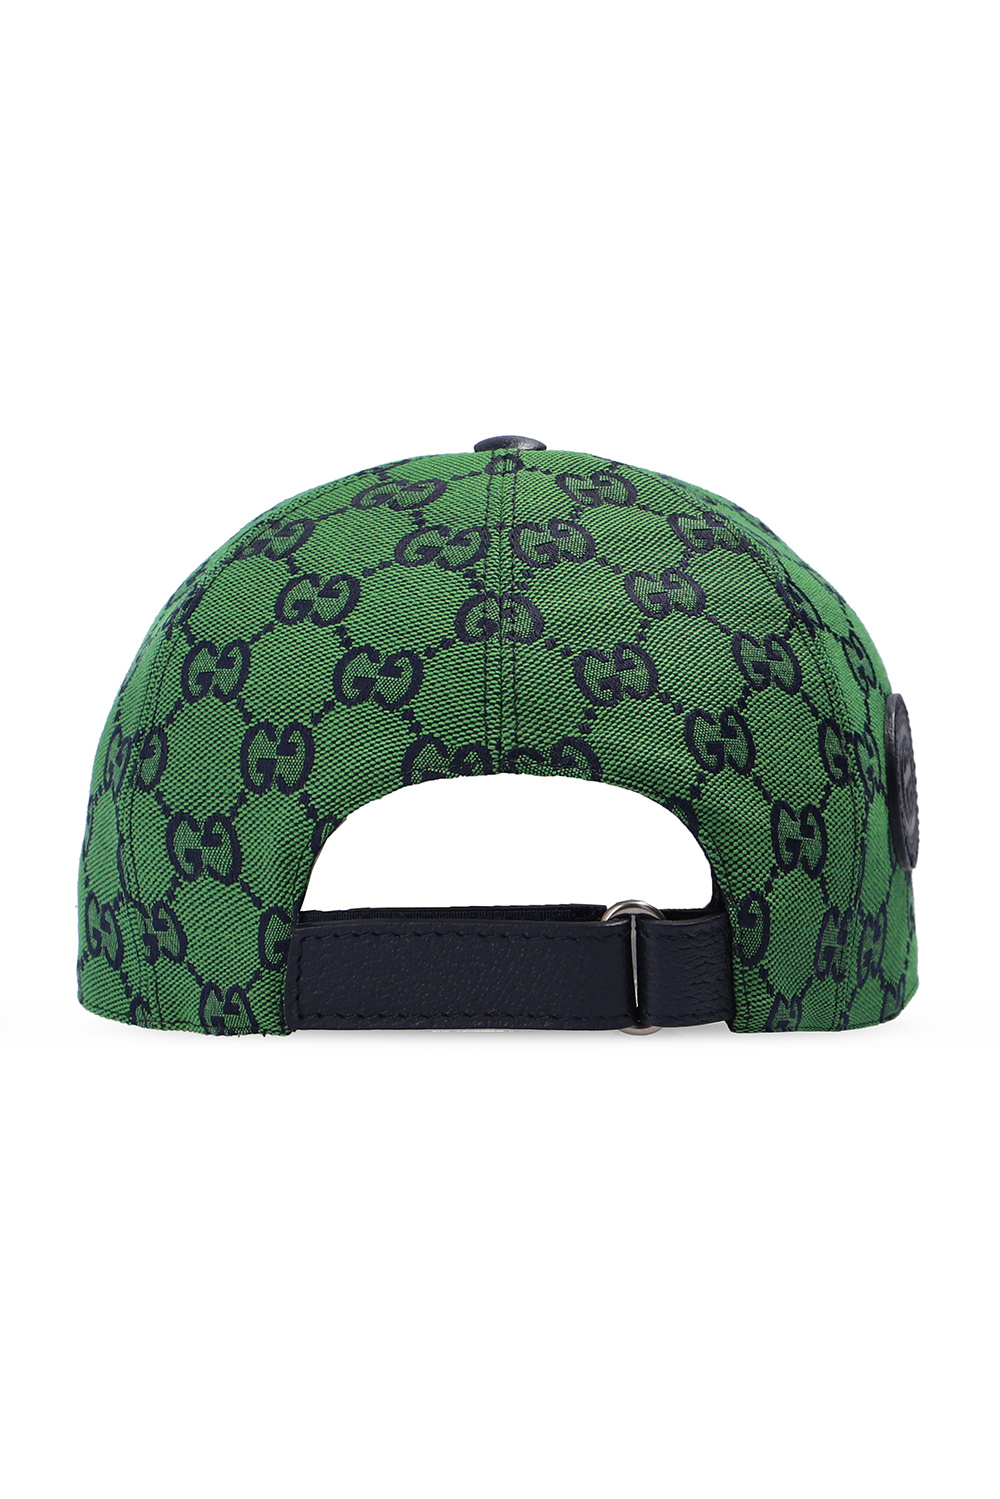 Gucci Baseball cap 'GG Multicolour' collection | Supreme glossy Gucci Mane  Tee Grey | IetpShops | Men's Accessories